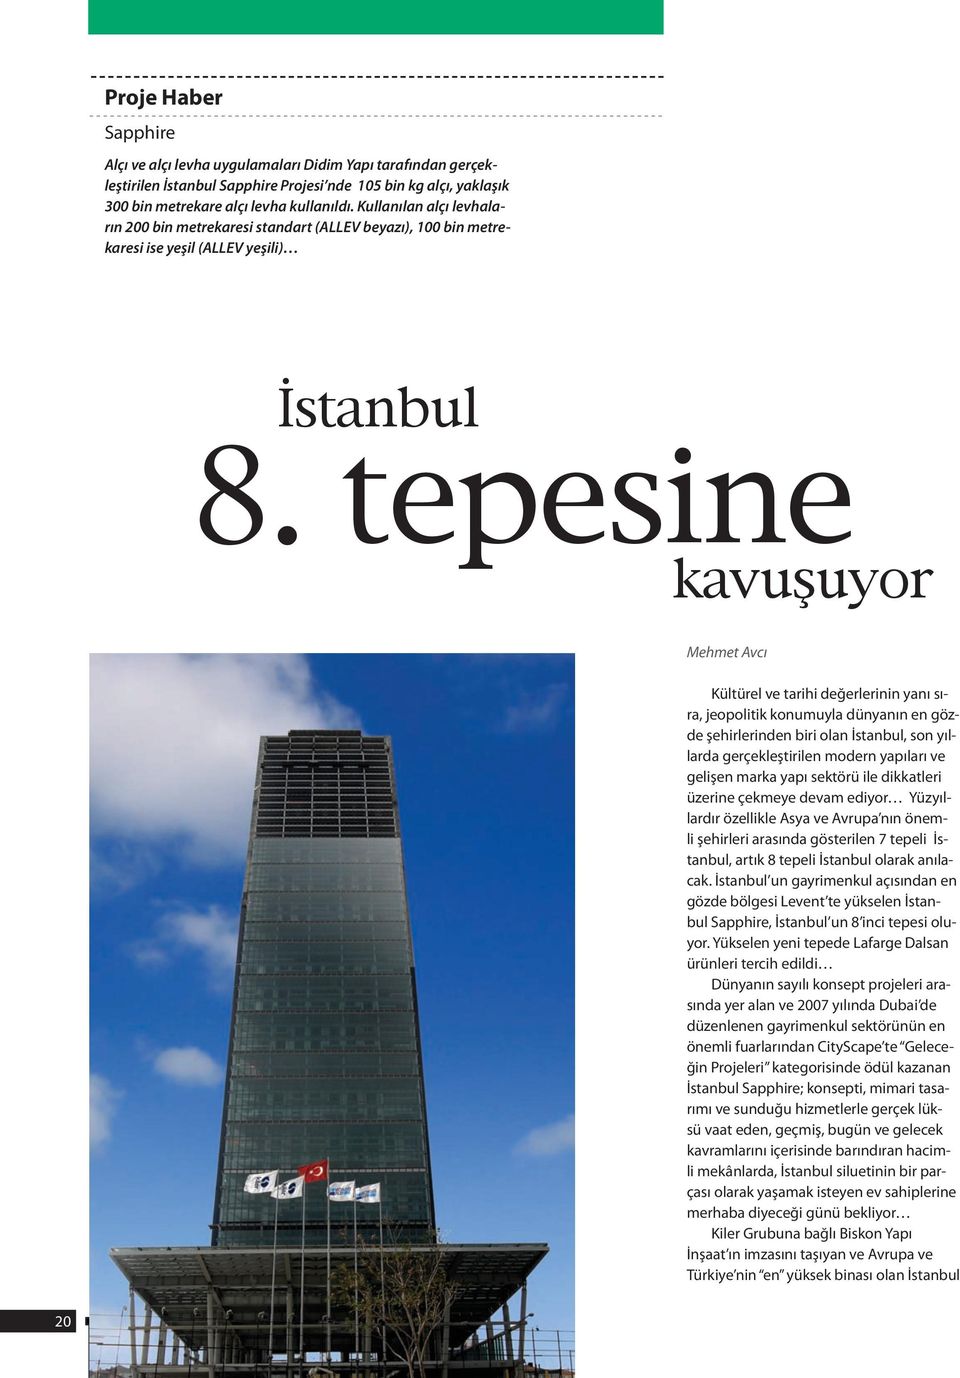 tepesine kavuşuyor Mehmet Avcı Kültürel ve tarihi değerlerinin yanı sıra, jeopolitik konumuyla dünyanın en gözde şehirlerinden biri olan İstanbul, son yıllarda gerçekleştirilen modern yapıları ve